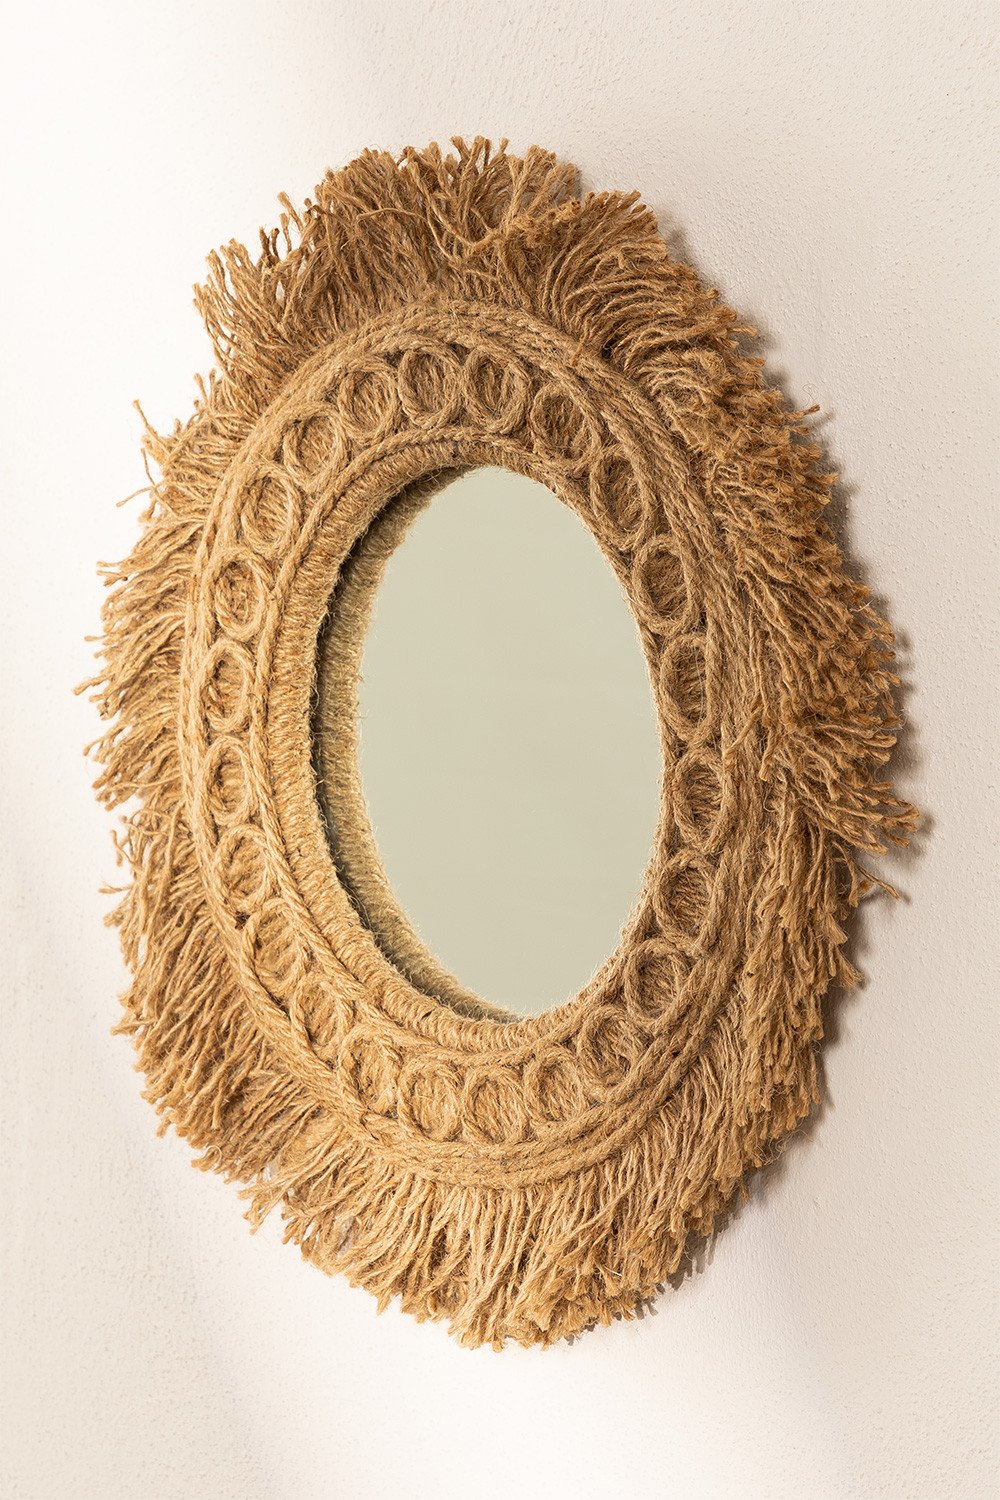 Specchio da parete Rotondo in corda (Ø40 cm) Remie, immagine della galleria 1